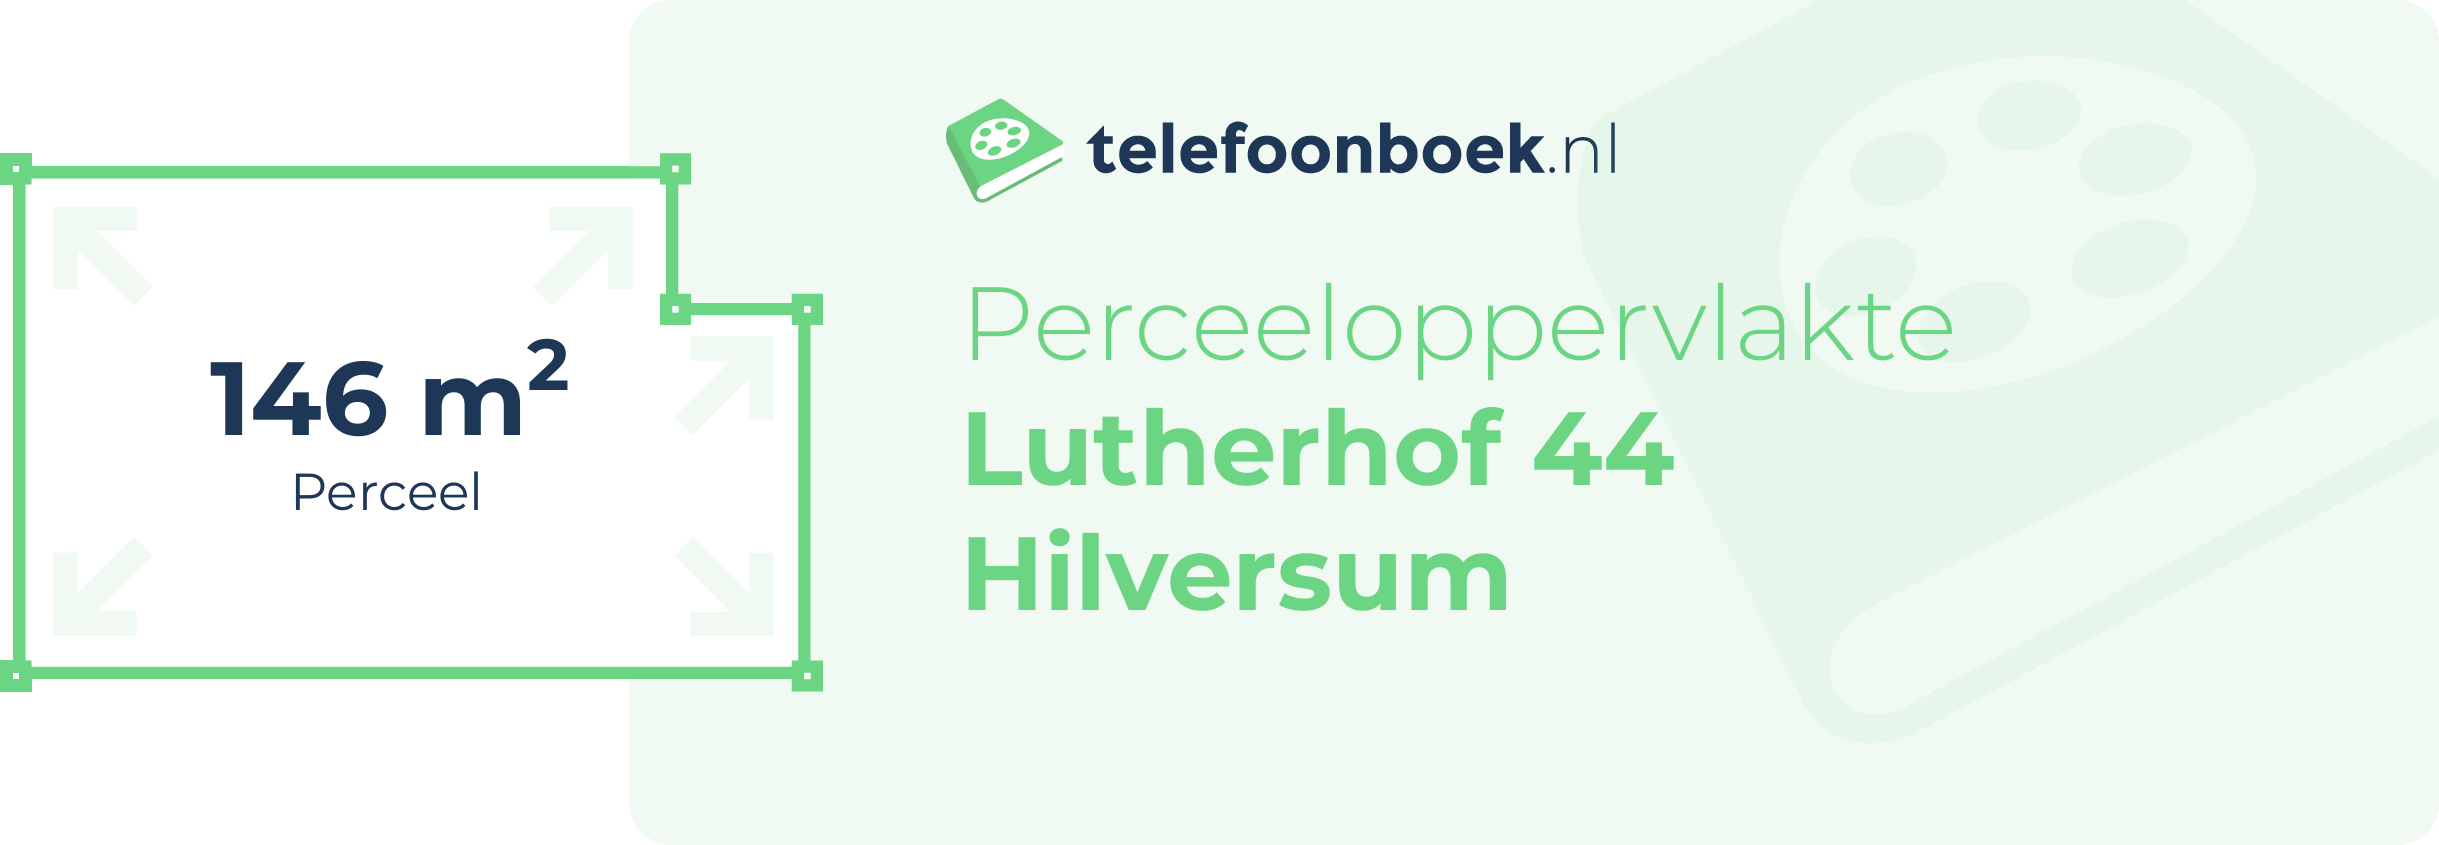 Perceeloppervlakte Lutherhof 44 Hilversum